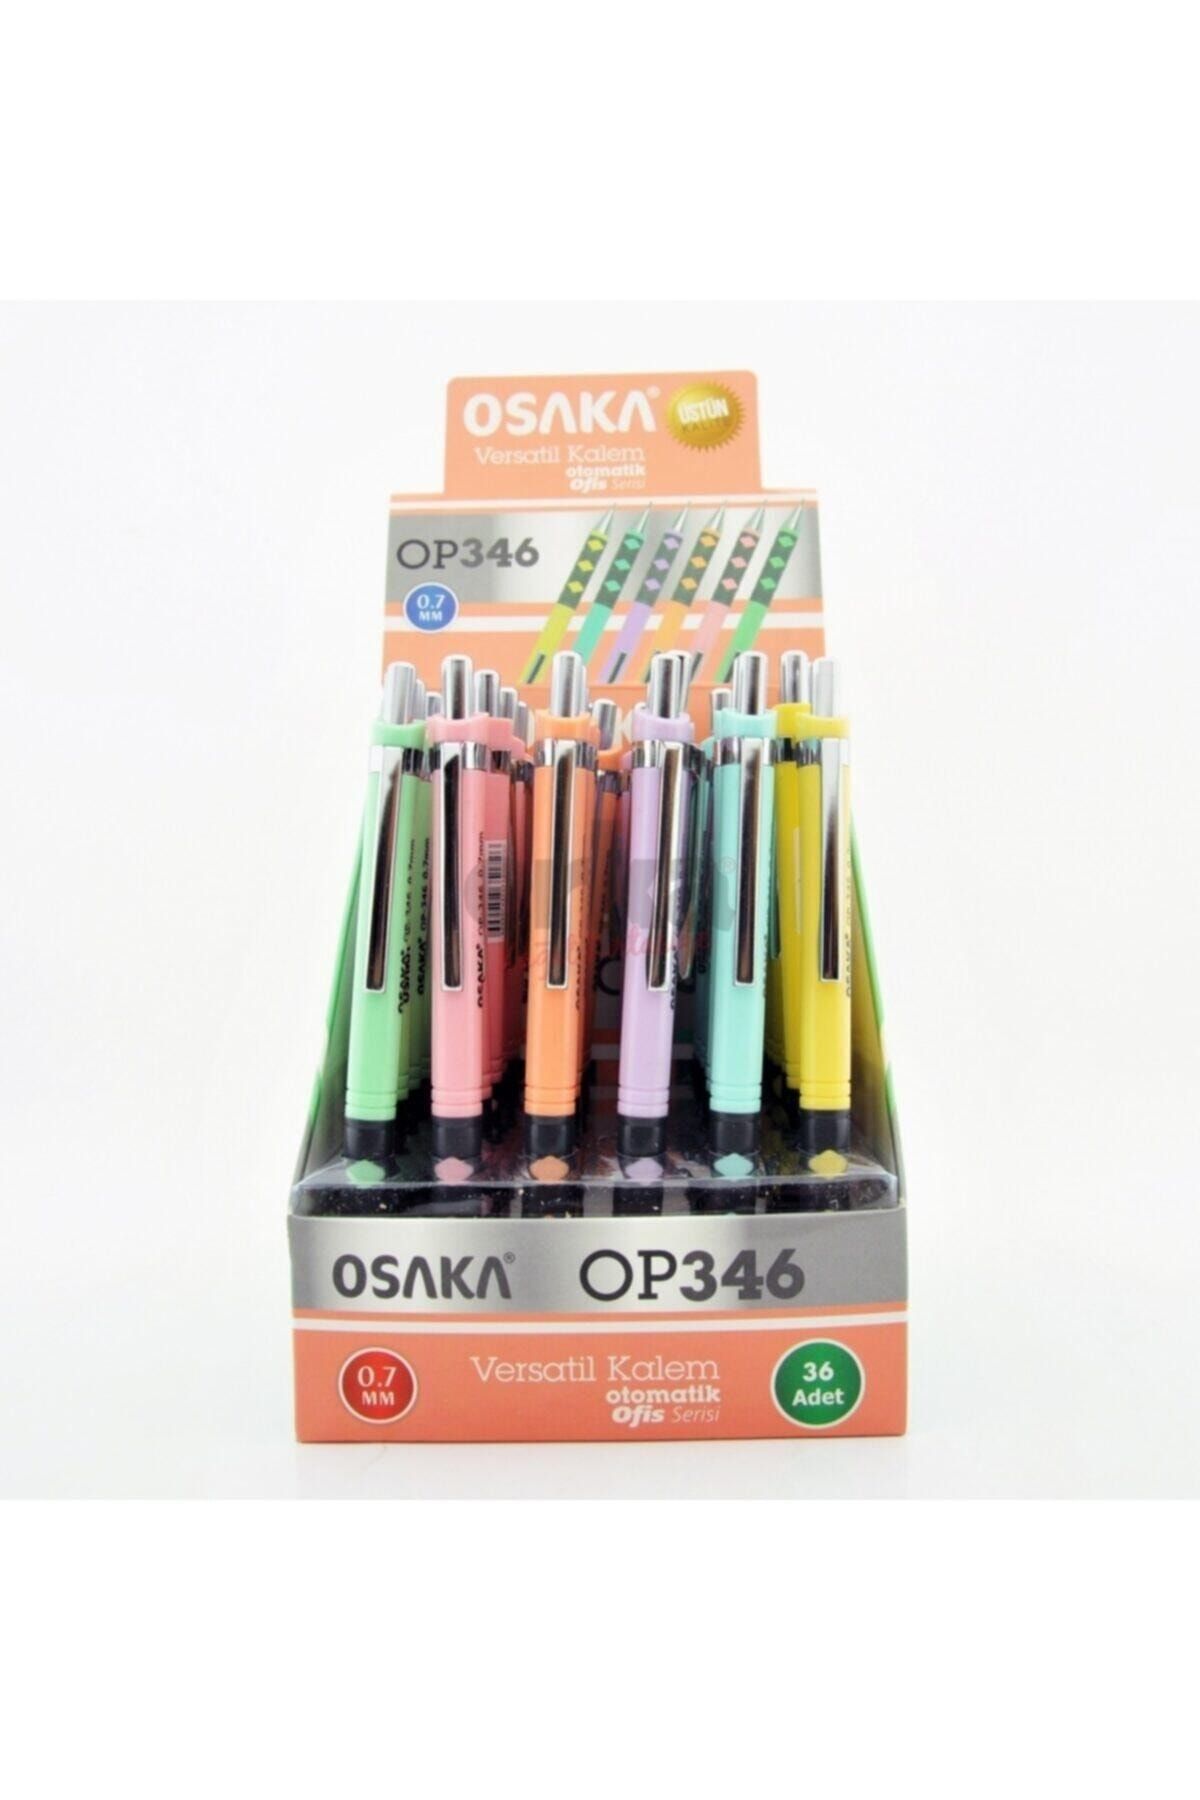 Osaka 6'lı Op346 Versatil (uçlu) Kalem 0.7